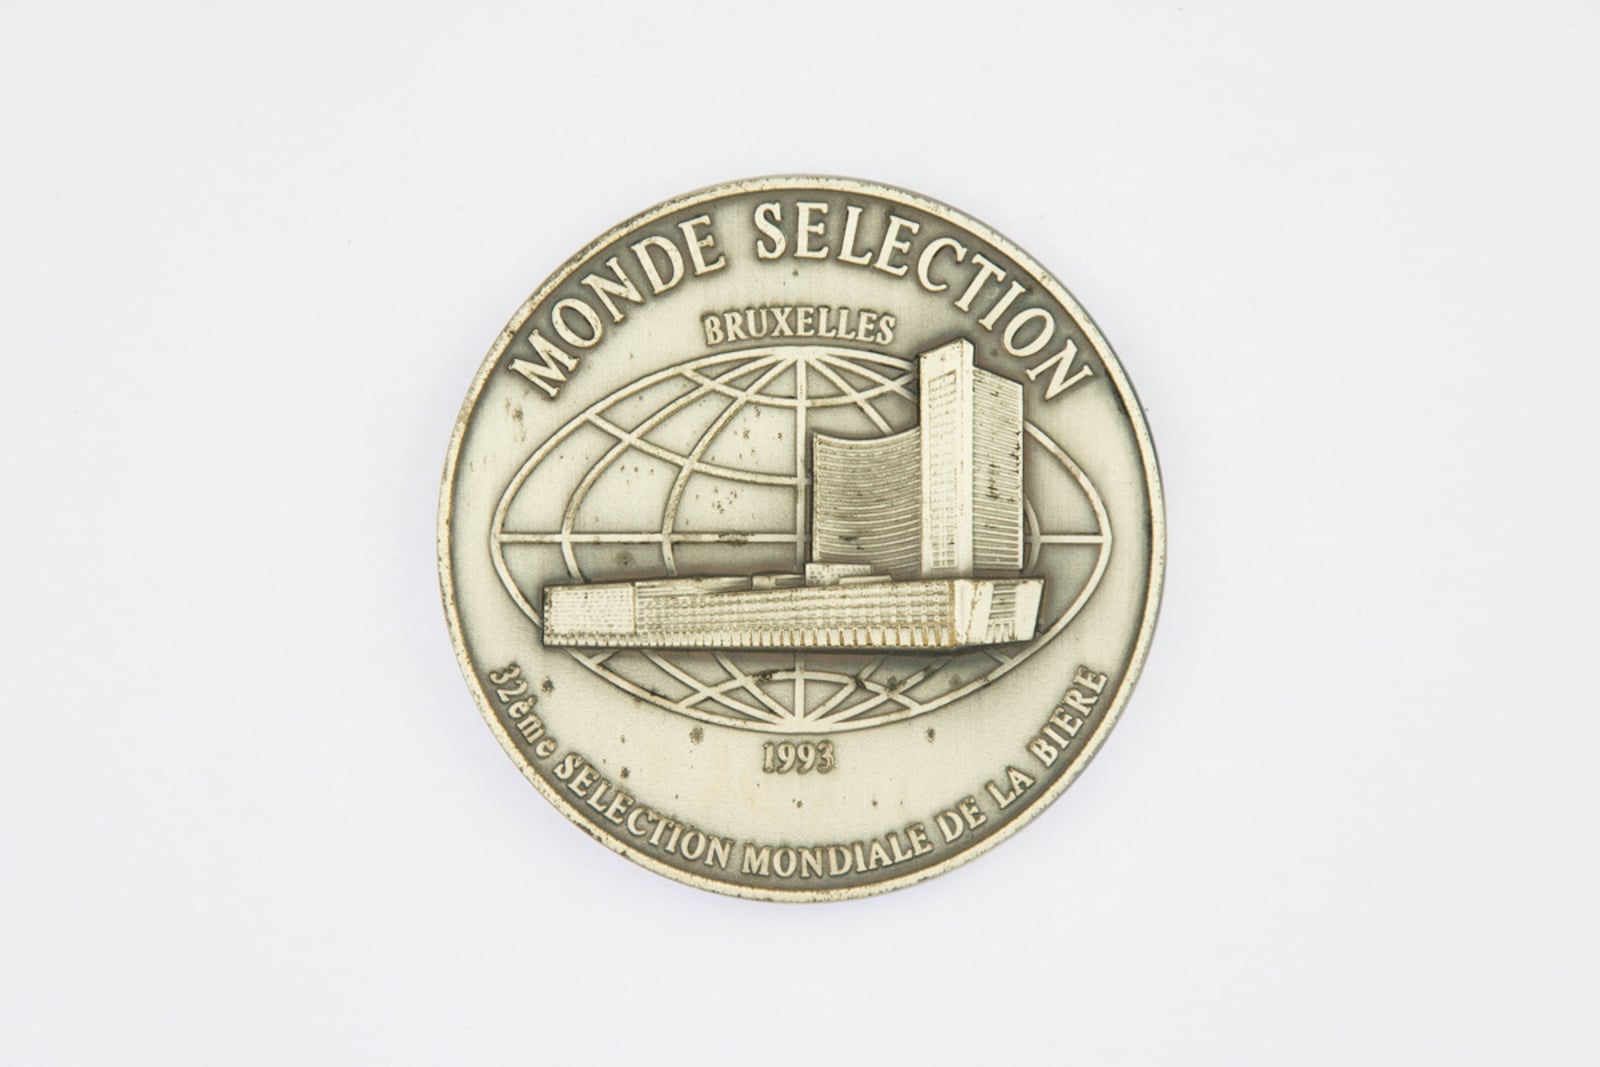 Monde Selection Bruxelles Medaille d'Argent 1993